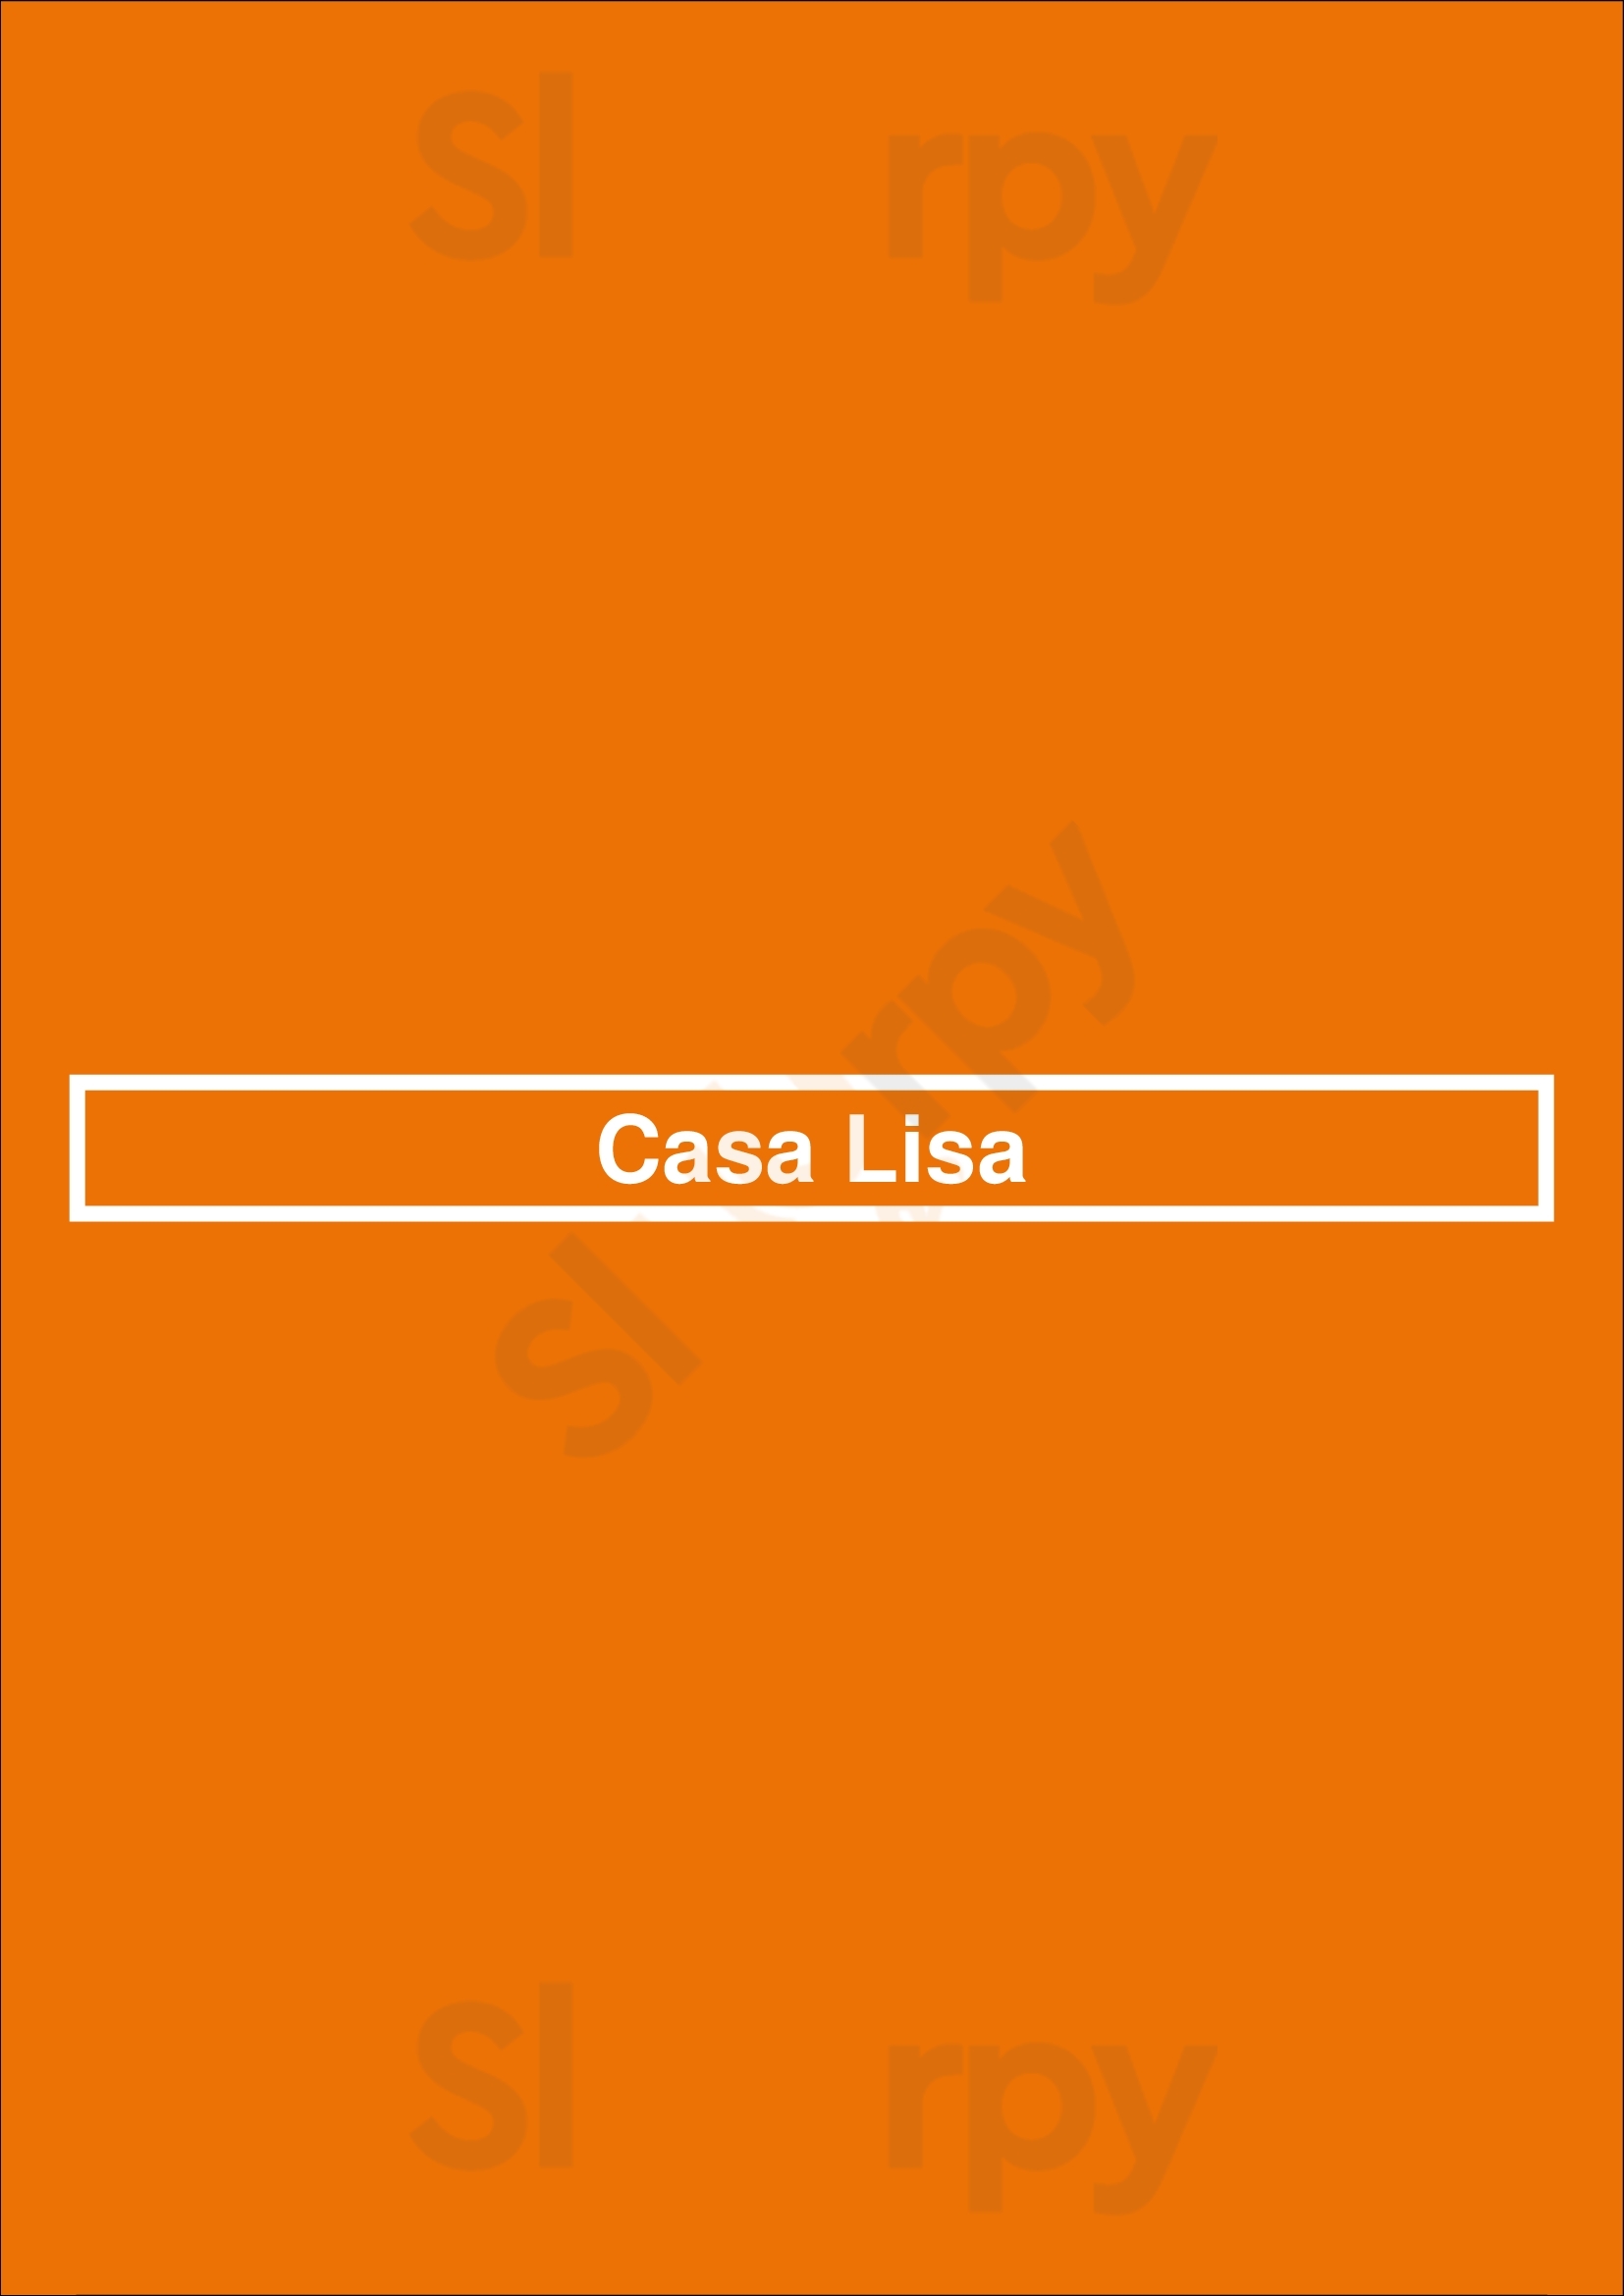 Casa Lisa Duivendrecht Menu - 1